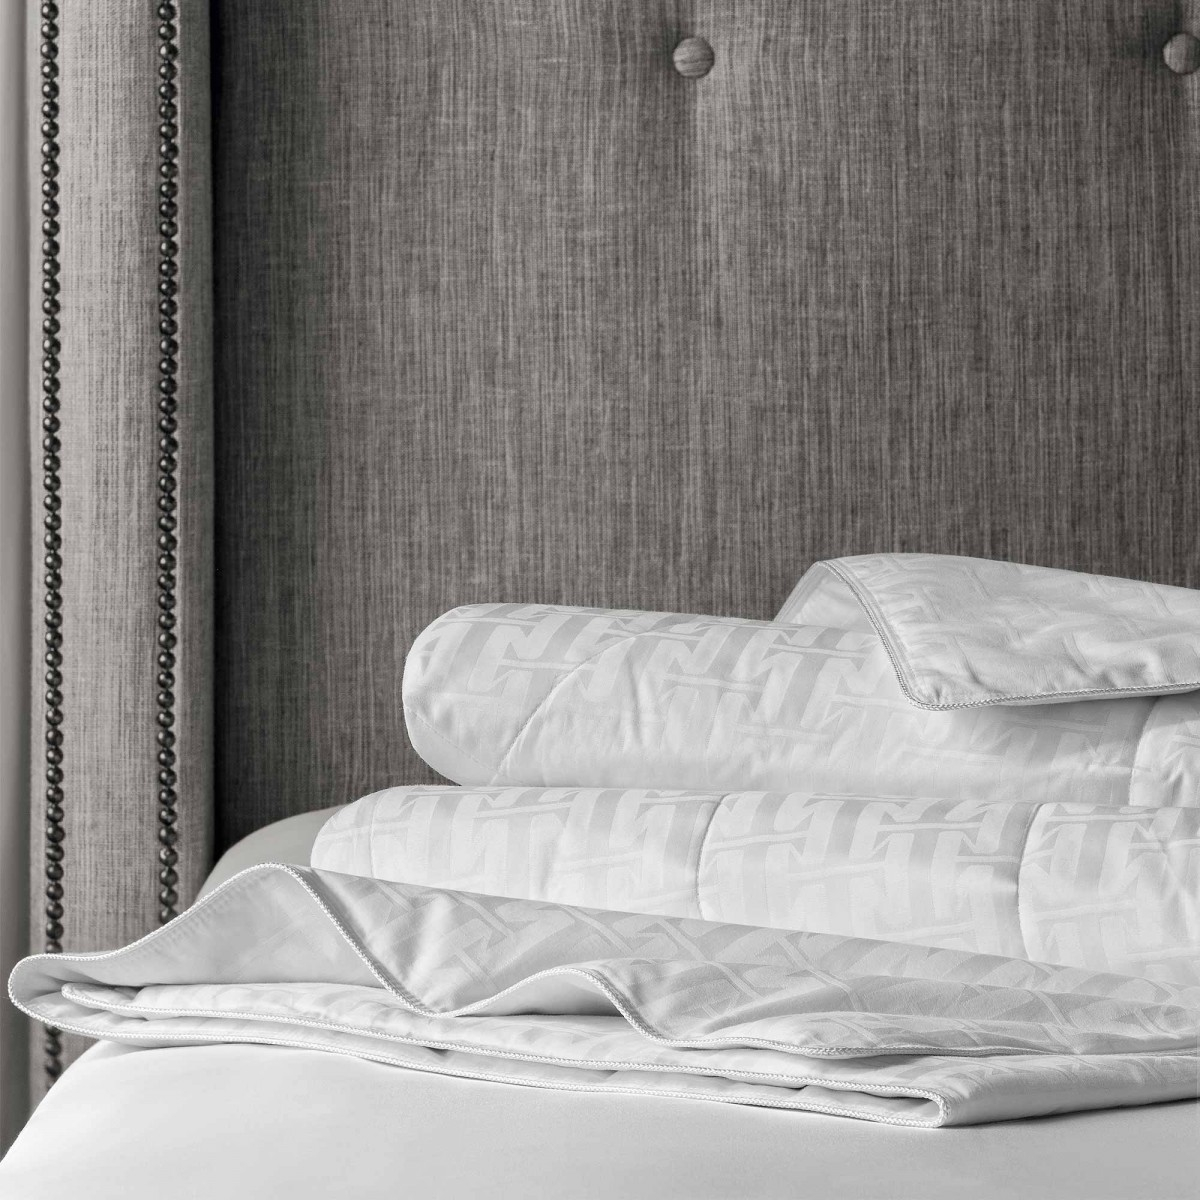 Одеяло Селена (140х200 см), размер 140х200 см, цвет белый tgs355763 Одеяло Селена (140х200 см) - фото 1